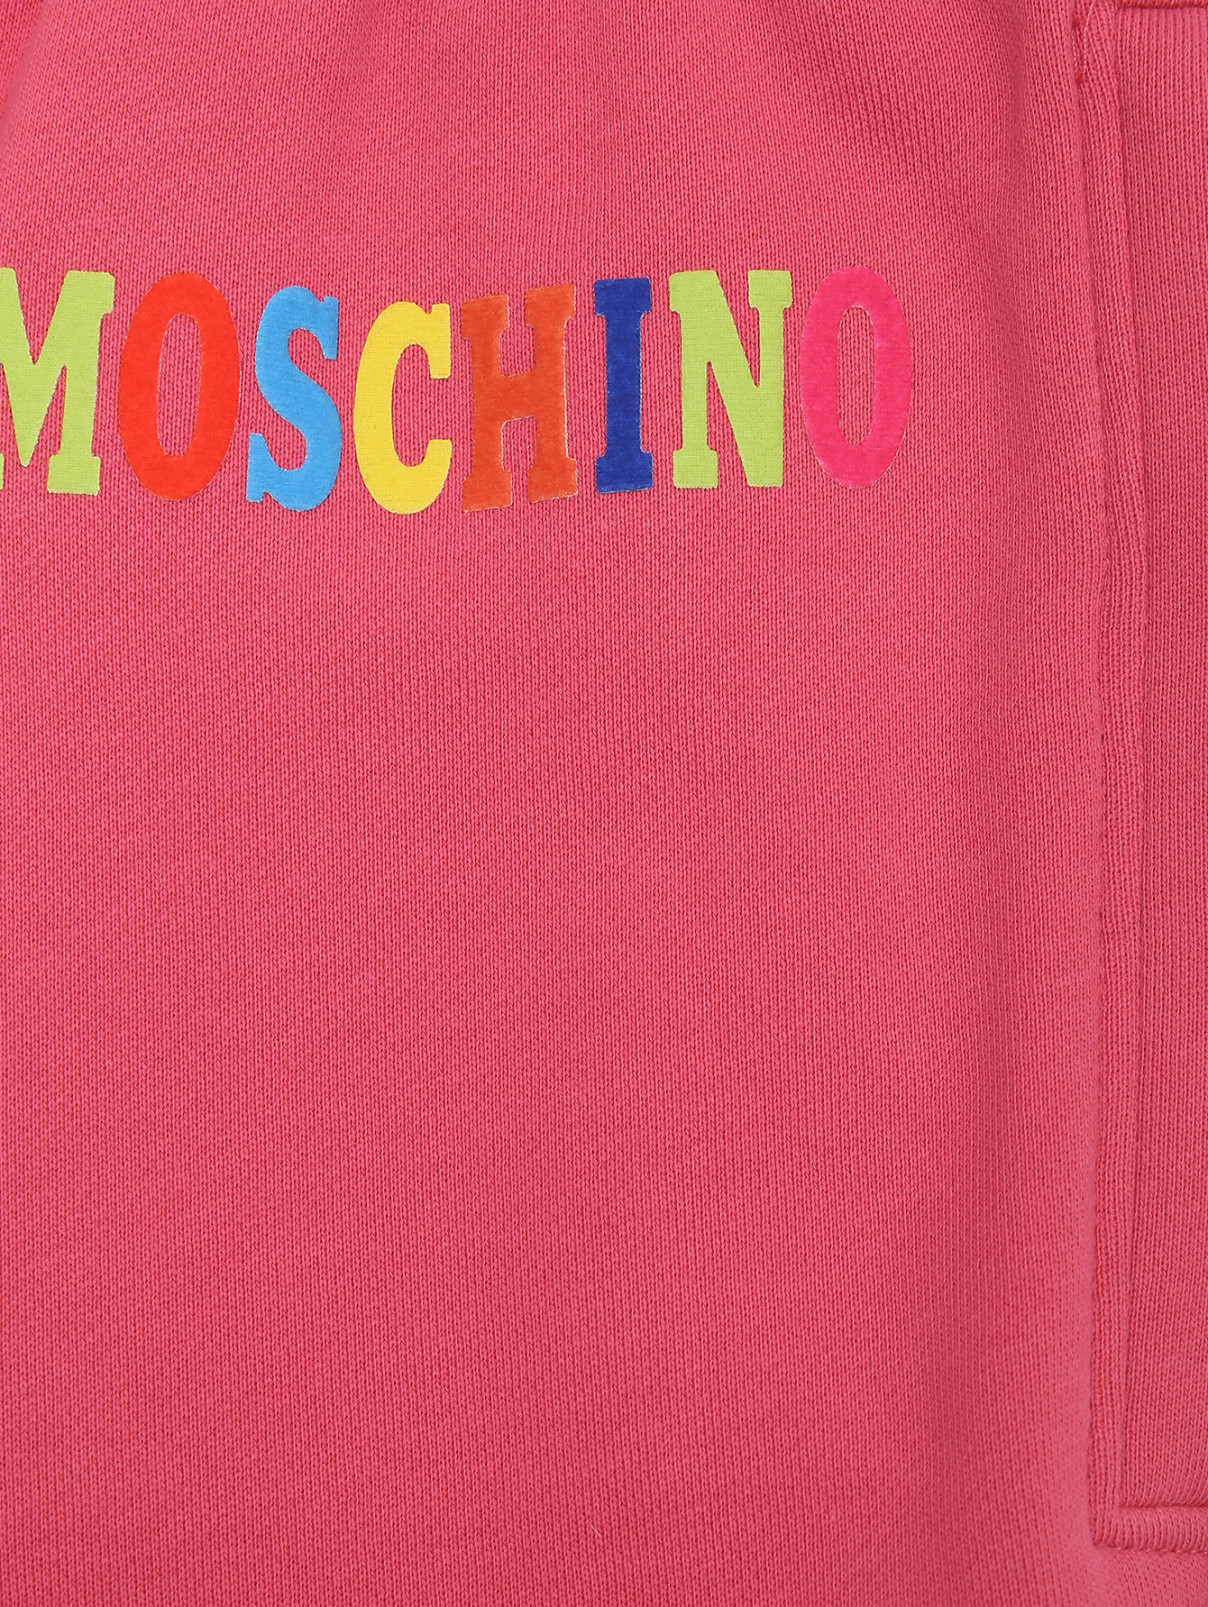 Трикотажные брюки с принтом Moschino  –  Деталь  – Цвет:  Розовый